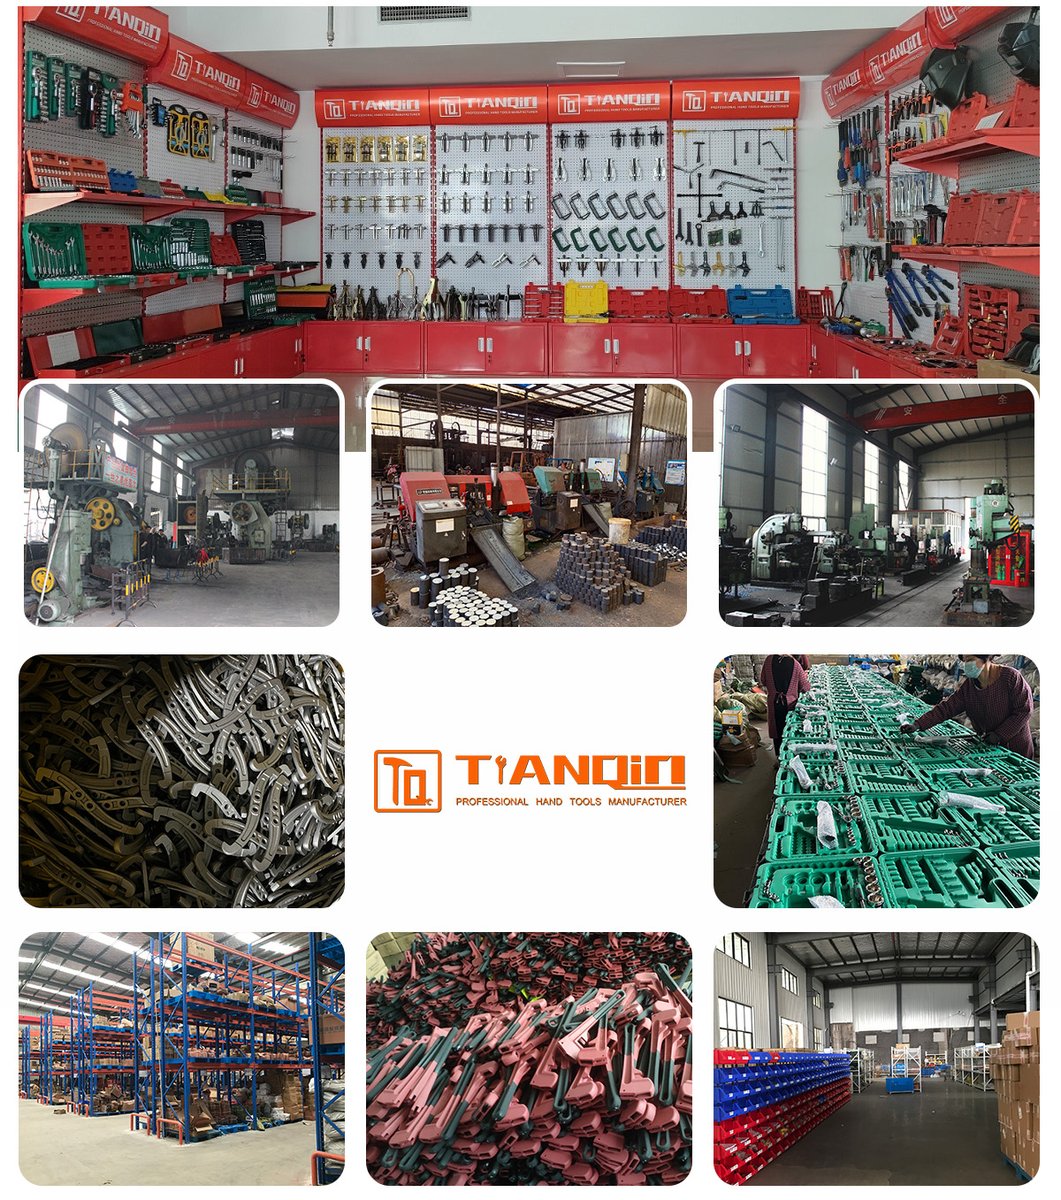 tianqian hand tool manufacturer
#tianqin #handtool #handtools #manufacturer #manufacture #madeinChina #Chinese